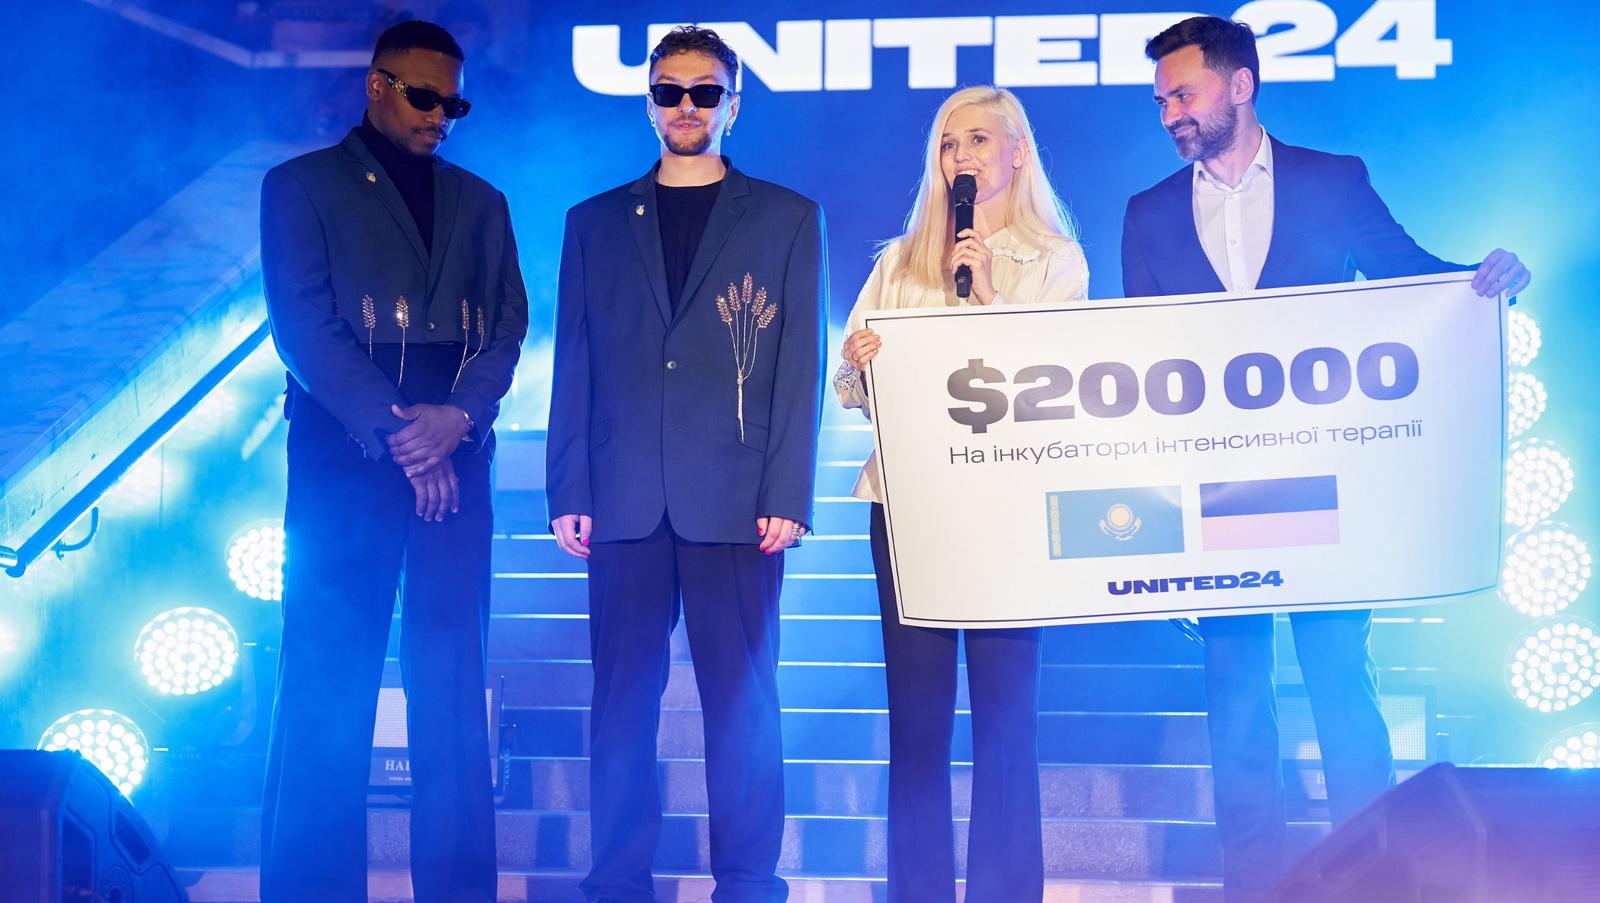 200 000 $ — перший чек від донора UNITED24 на збір гурту TVORCHI